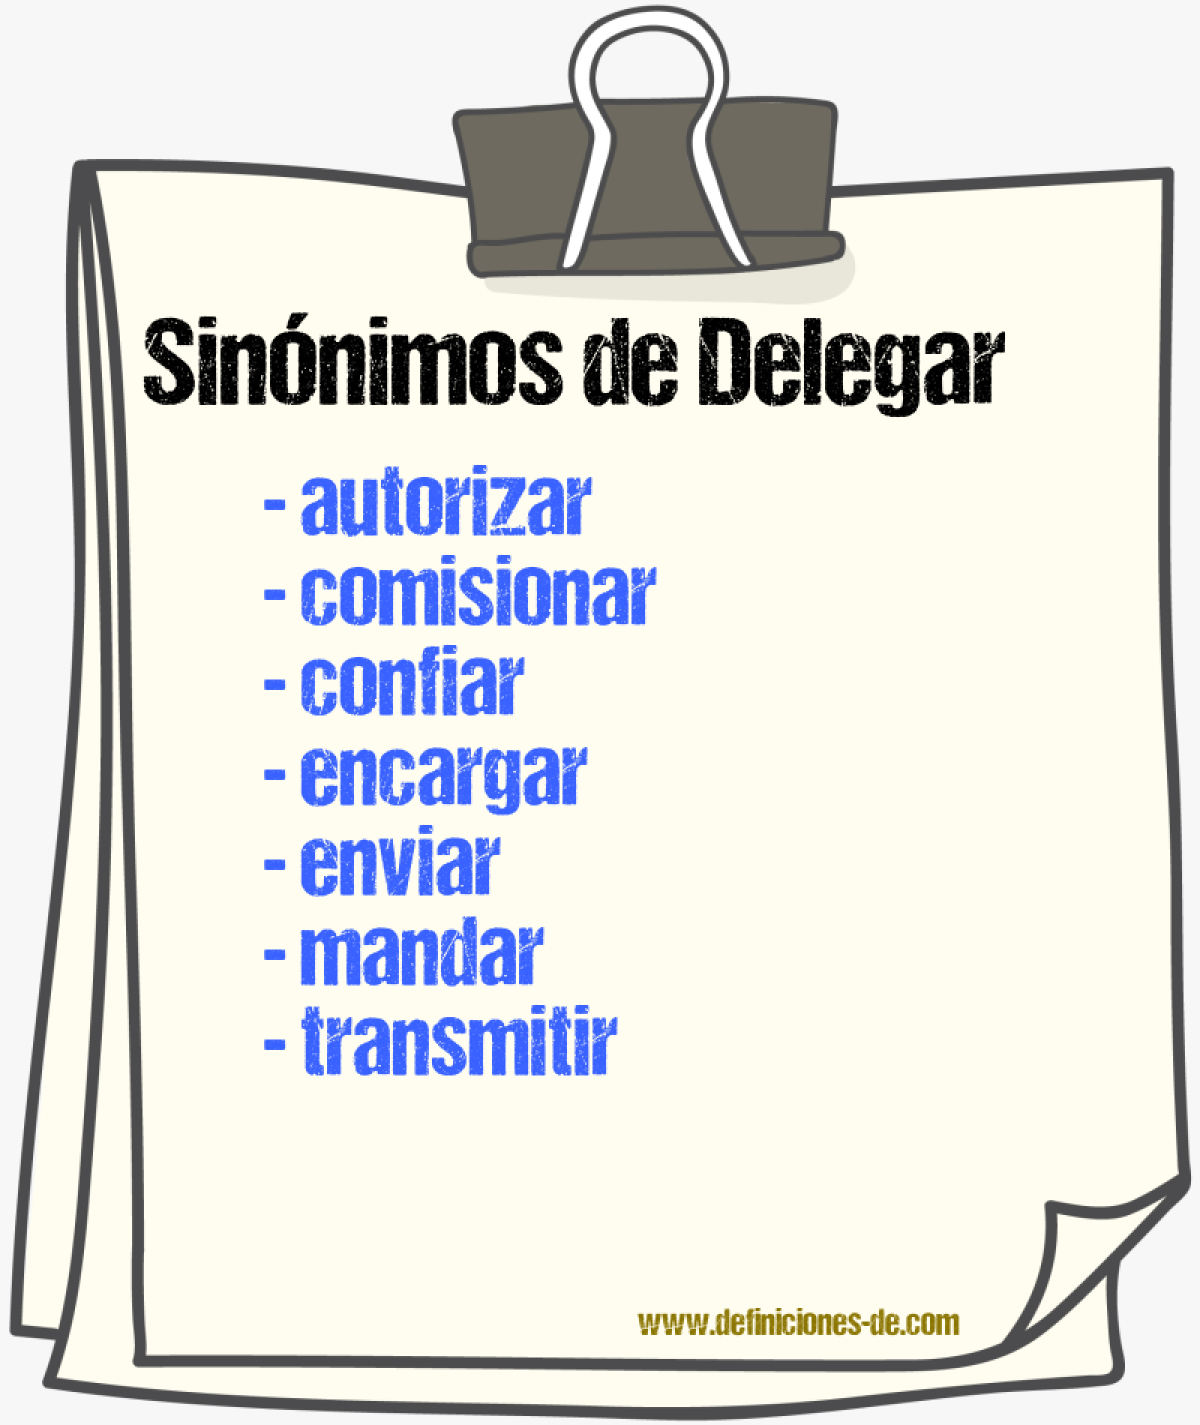 Sinónimos de delegar